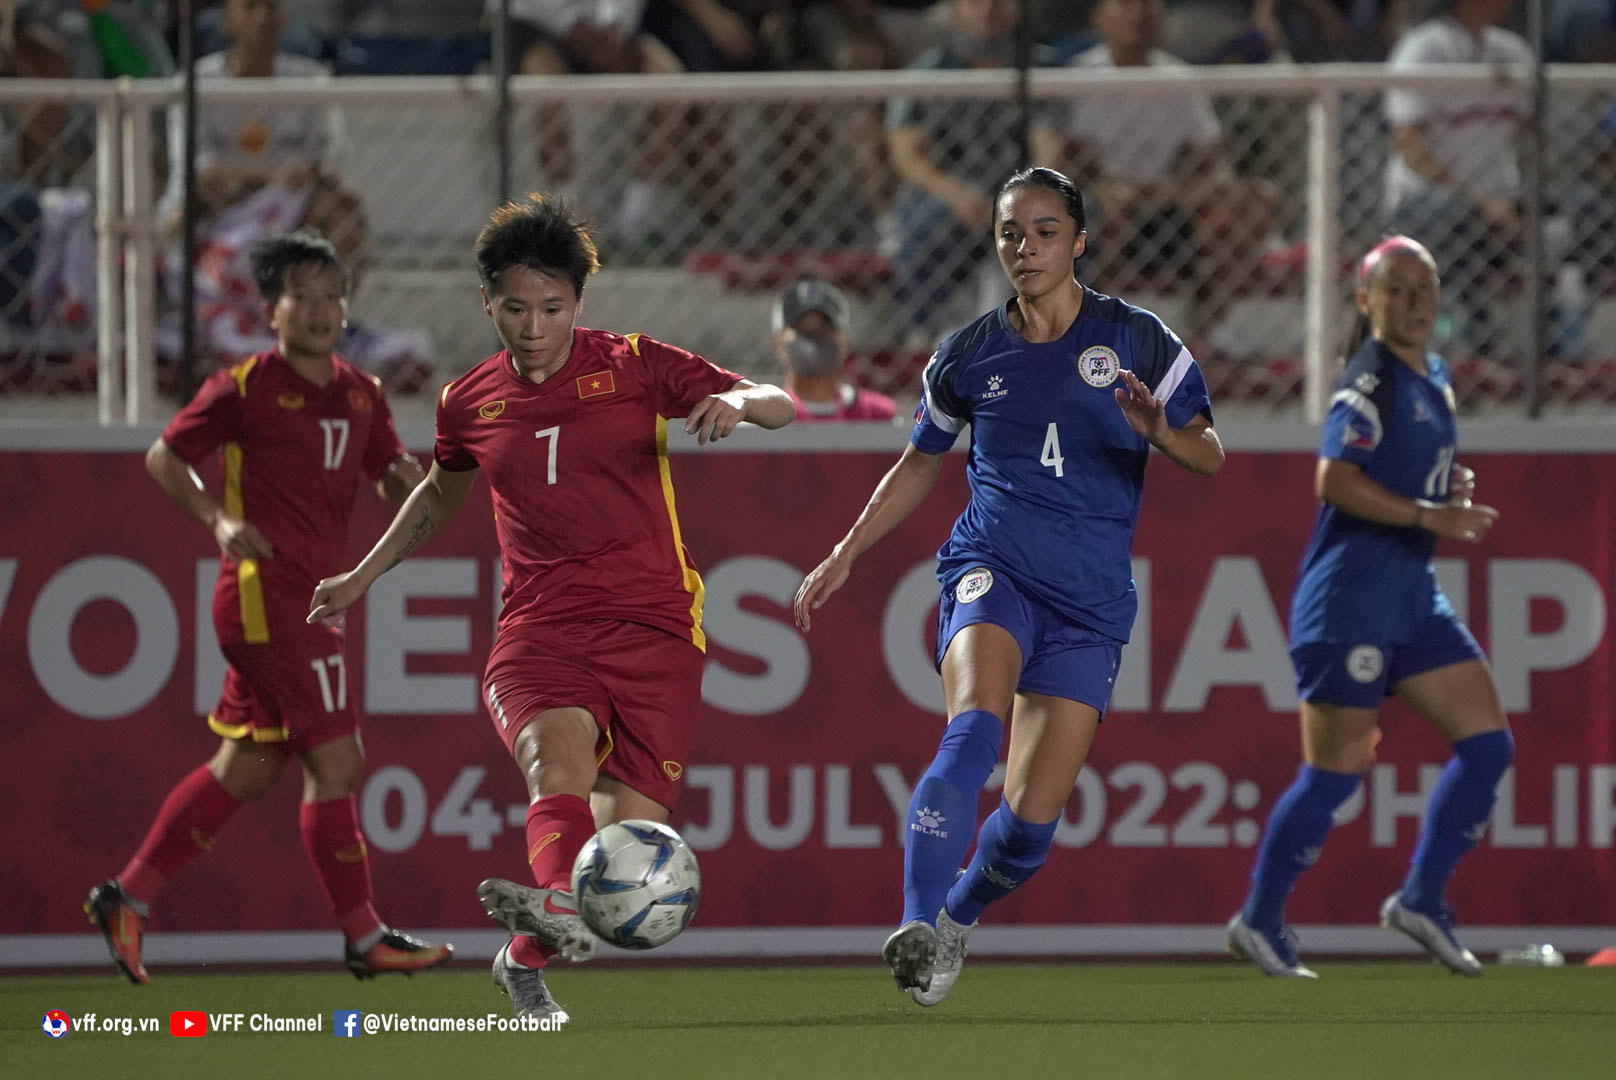 ĐT nữ Việt Nam sử dụng cầu thủ Việt kiều tại VCK World Cup 2023? - Ảnh 2.